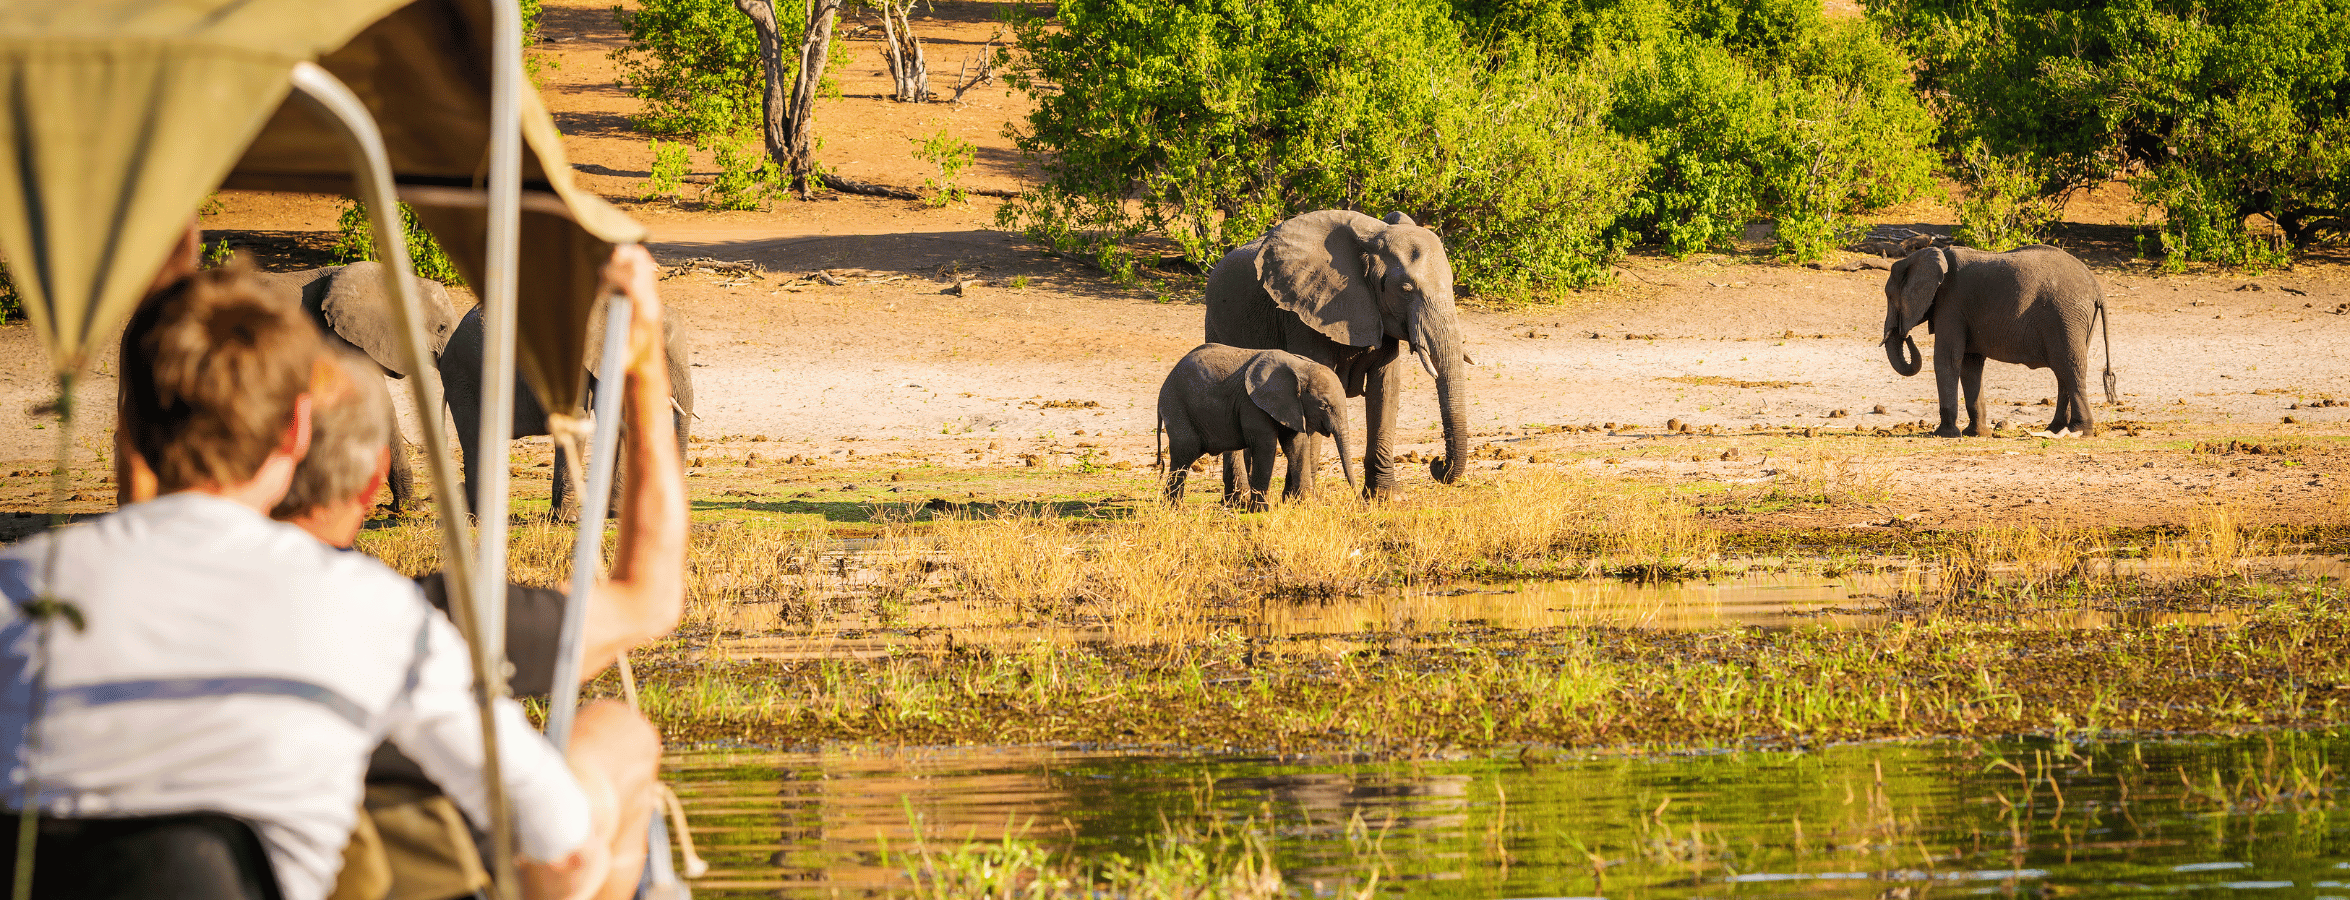 safarijeep upplever elefanter vid flodbädden